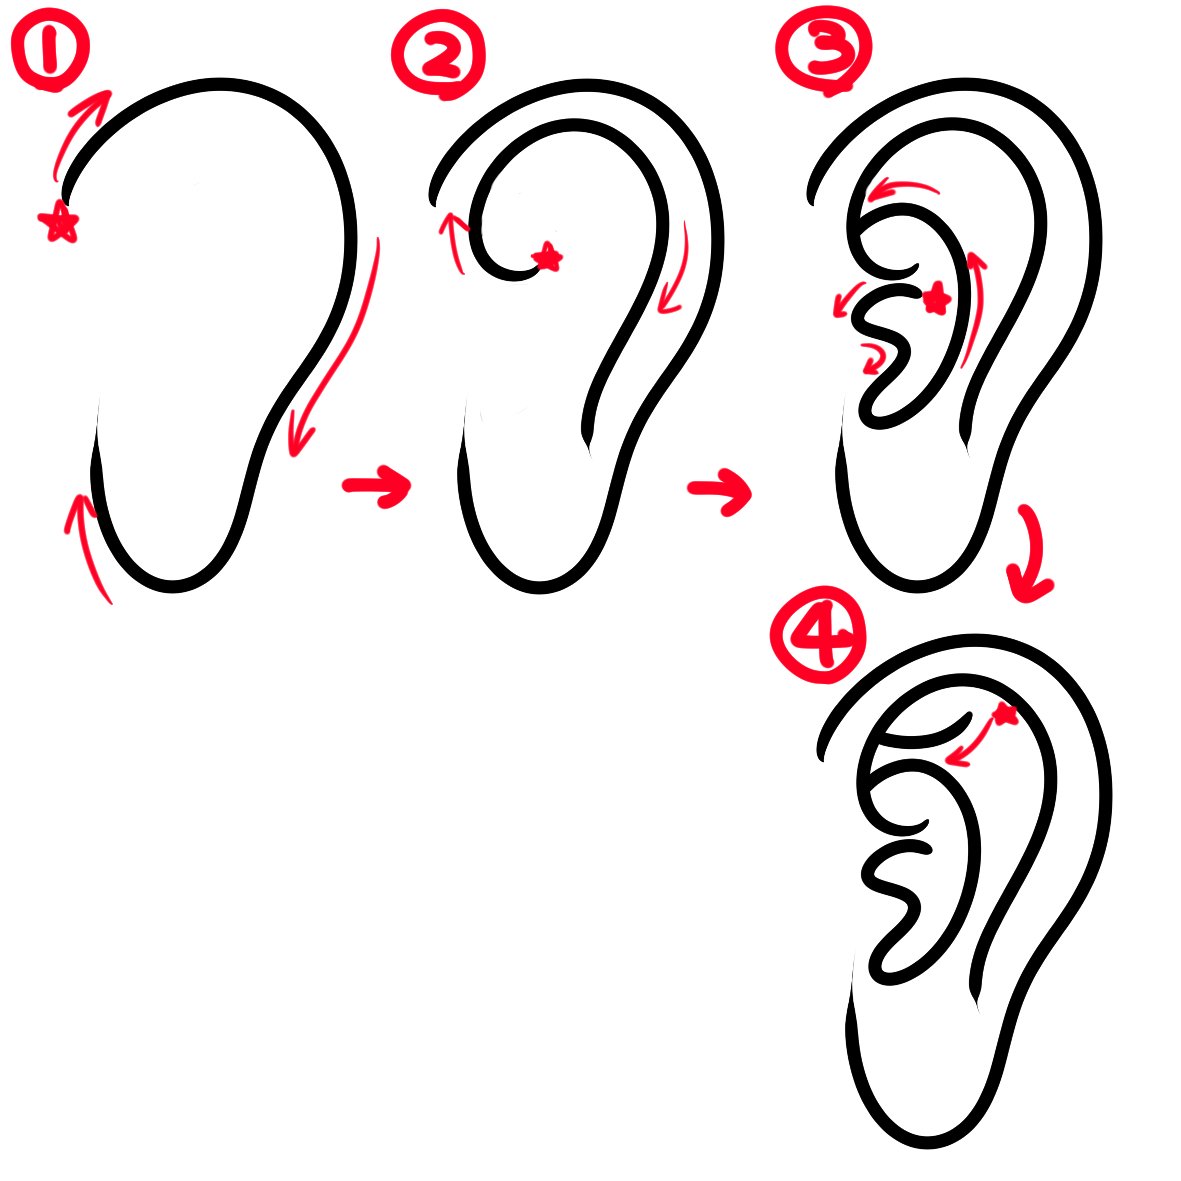 私的・耳の描き方手順。

#むじなメモ 